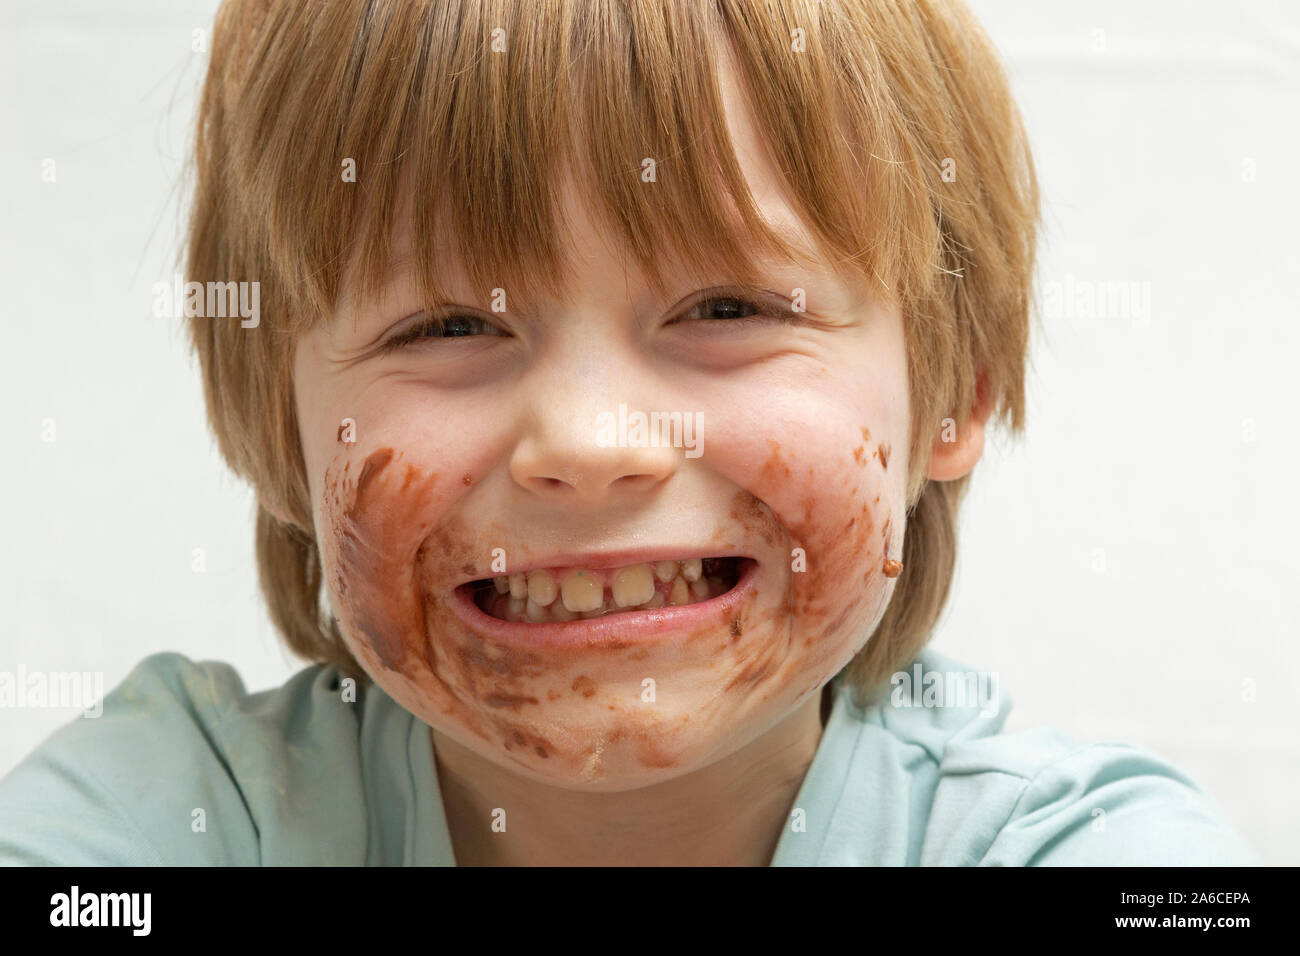 Retrato de un chico al que acaba de comer chocolate. Foto de stock